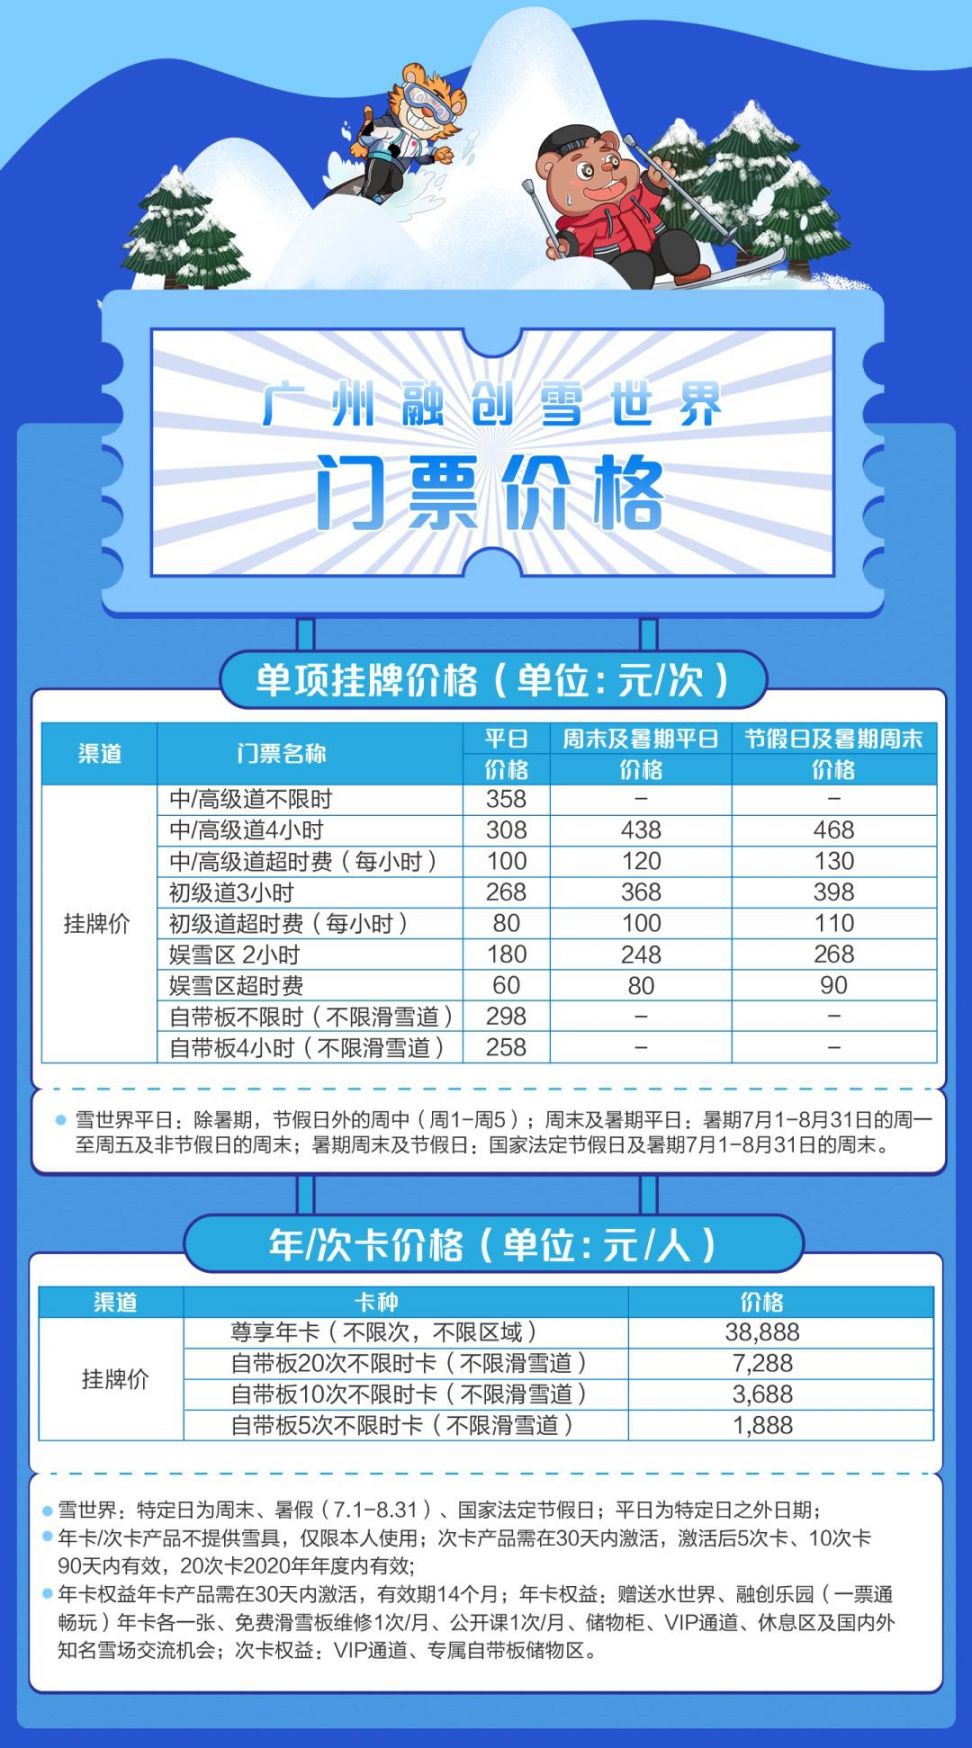 2020广州融创乐园门票多少钱?怎么买便宜?